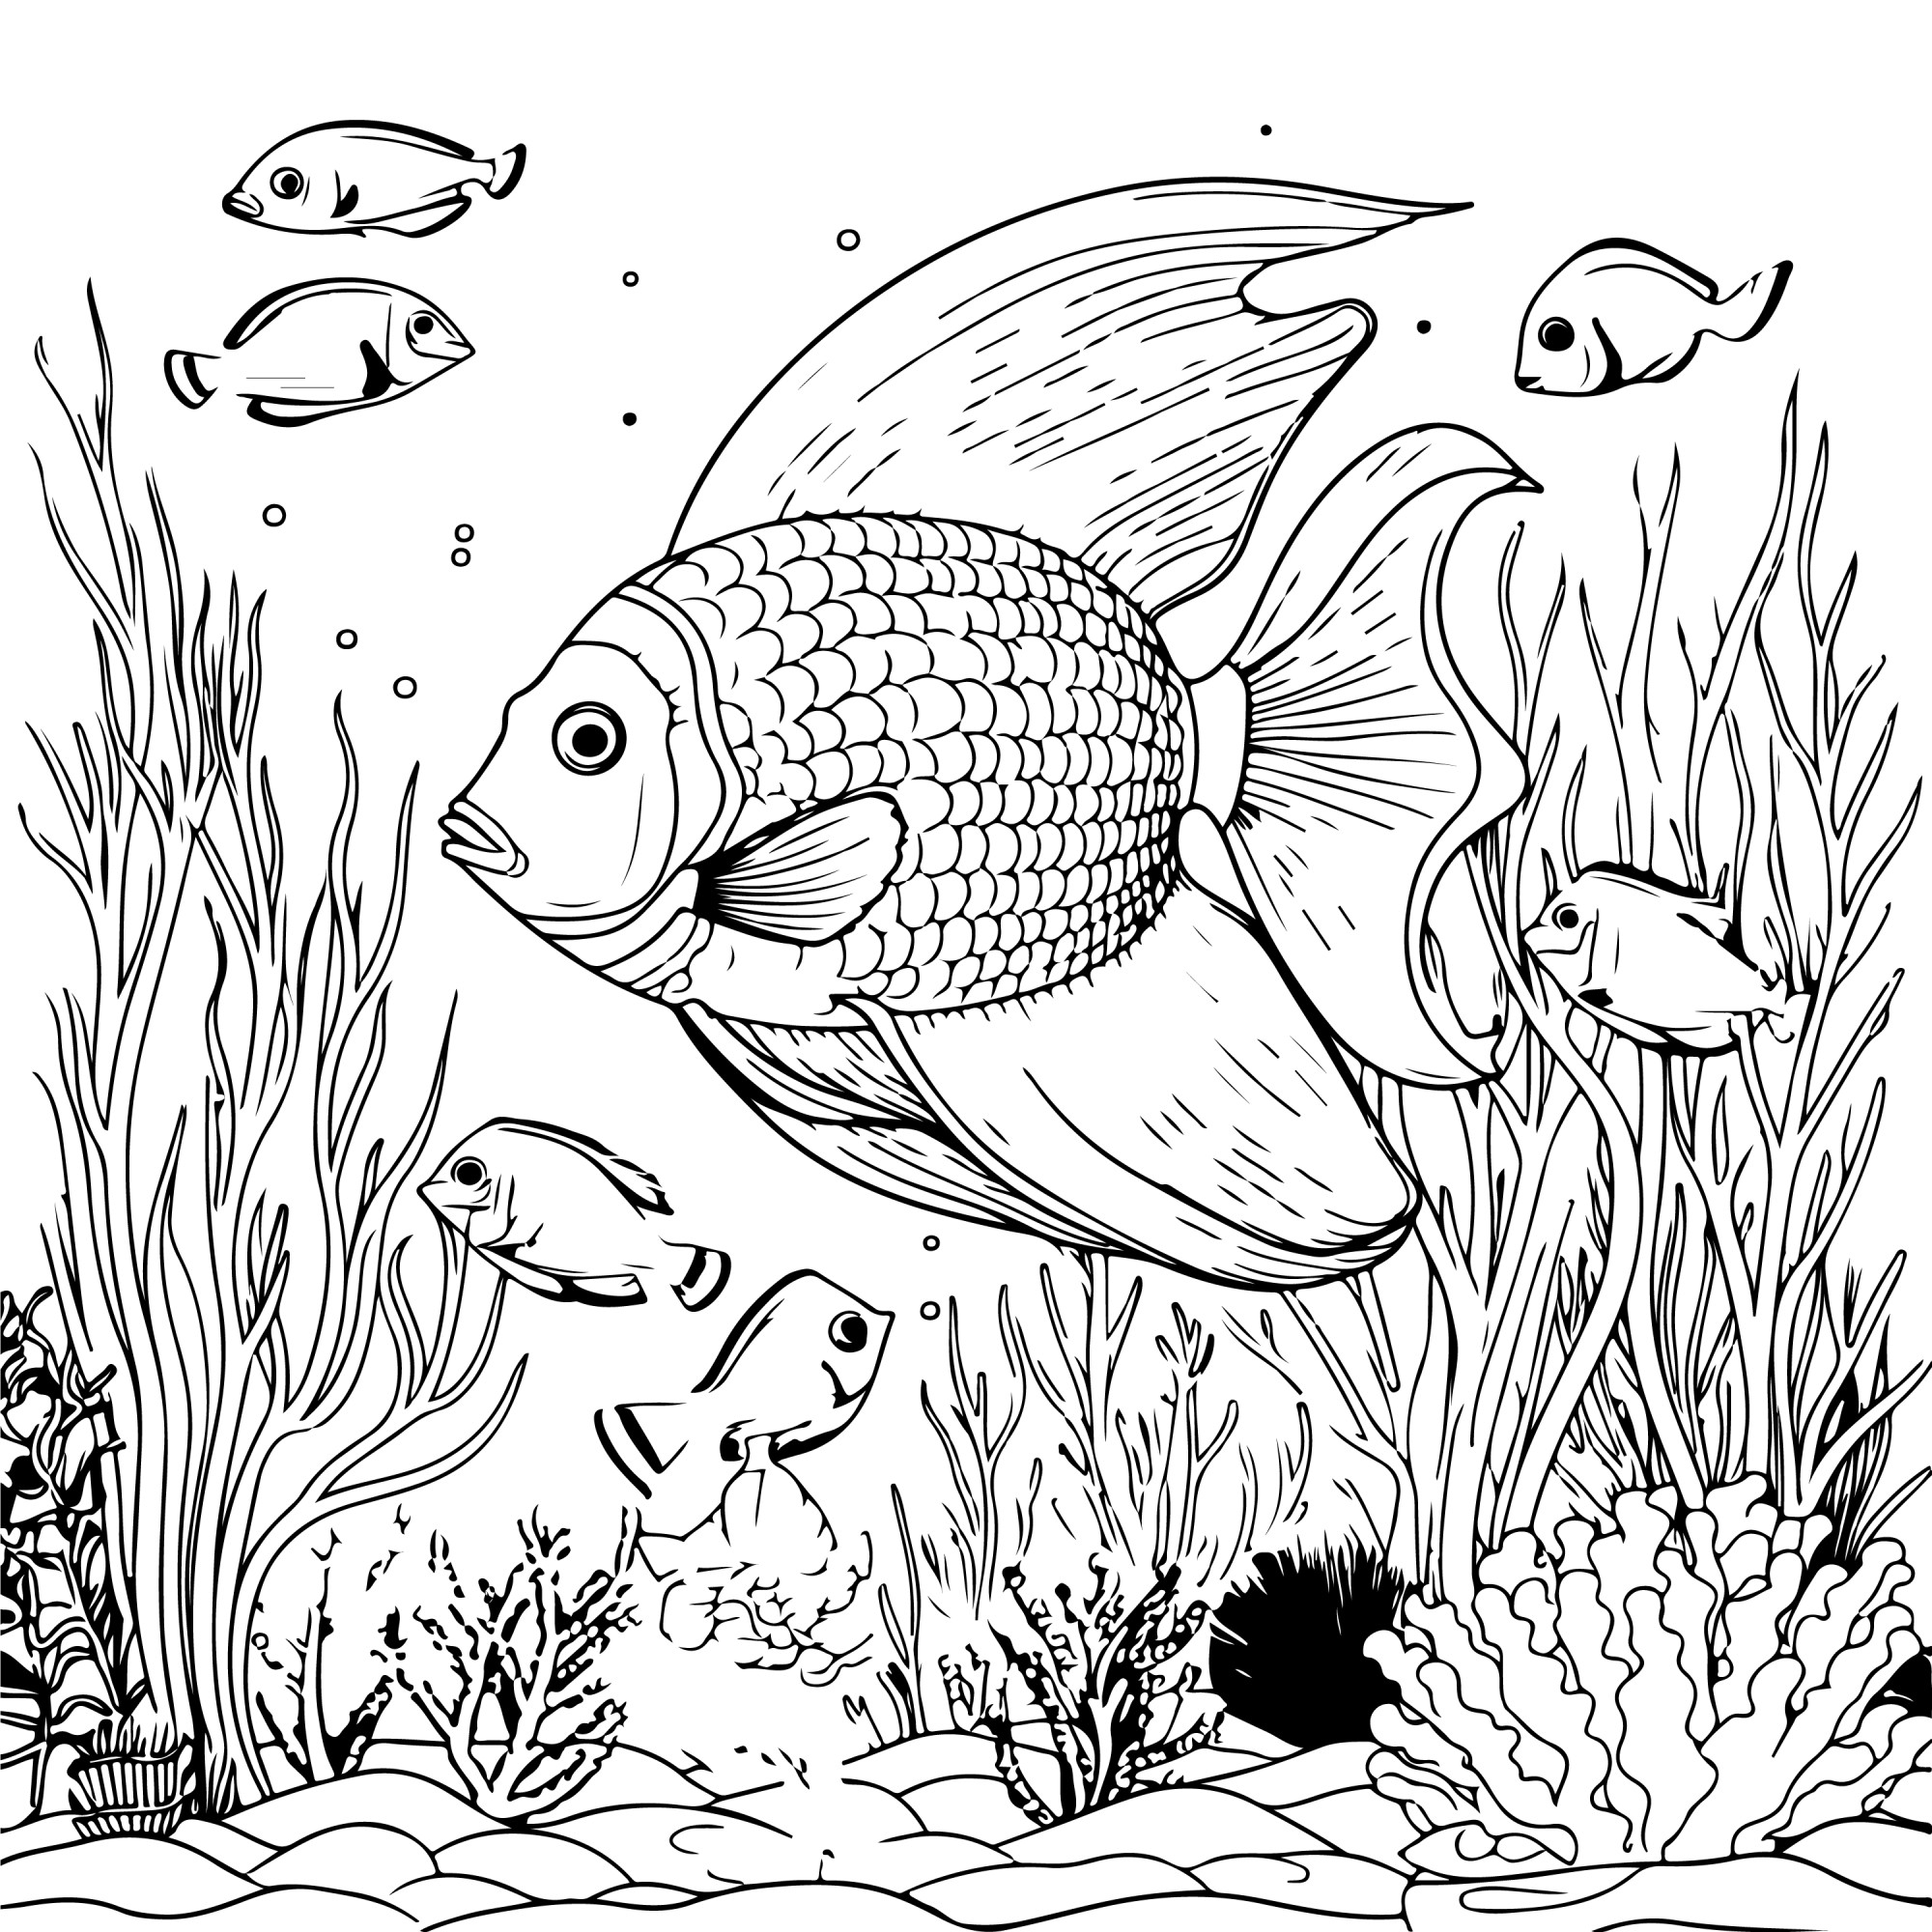 Раскраска для детей: рыбы в водорослях «Морская гармония»